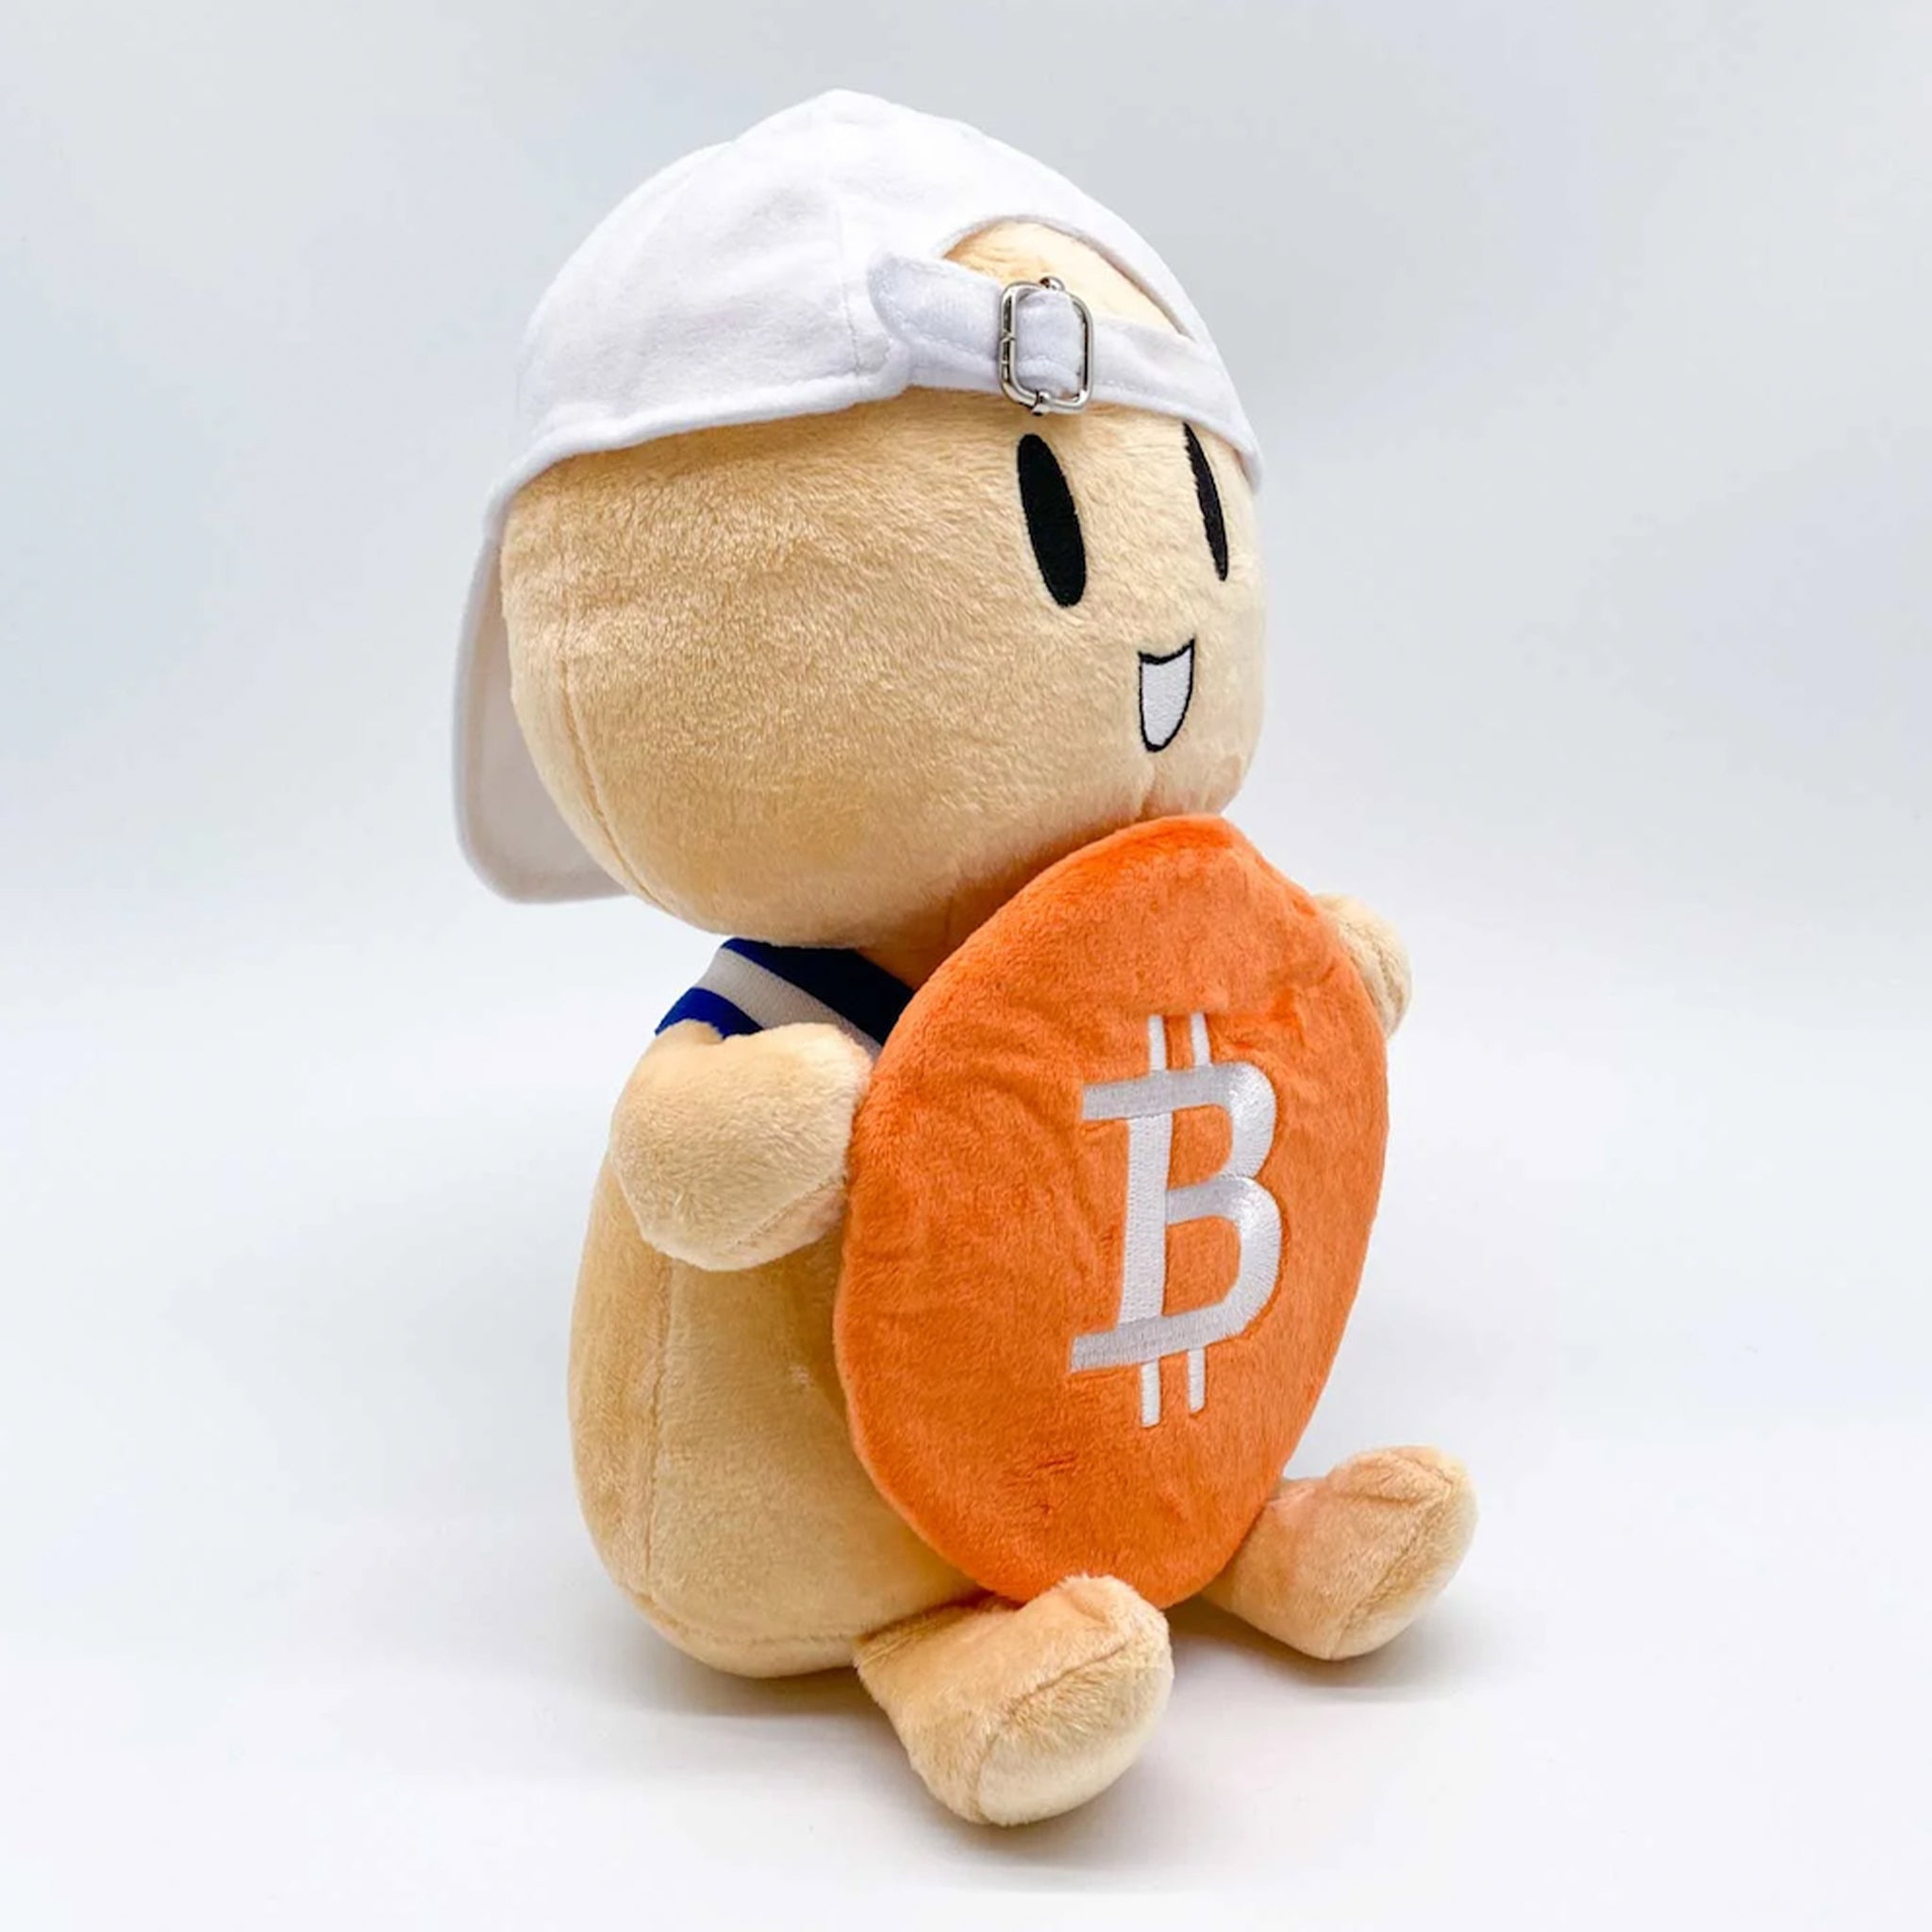 El Little Presidente Little HODLer 🇸🇻 - Bitcoin Magazine